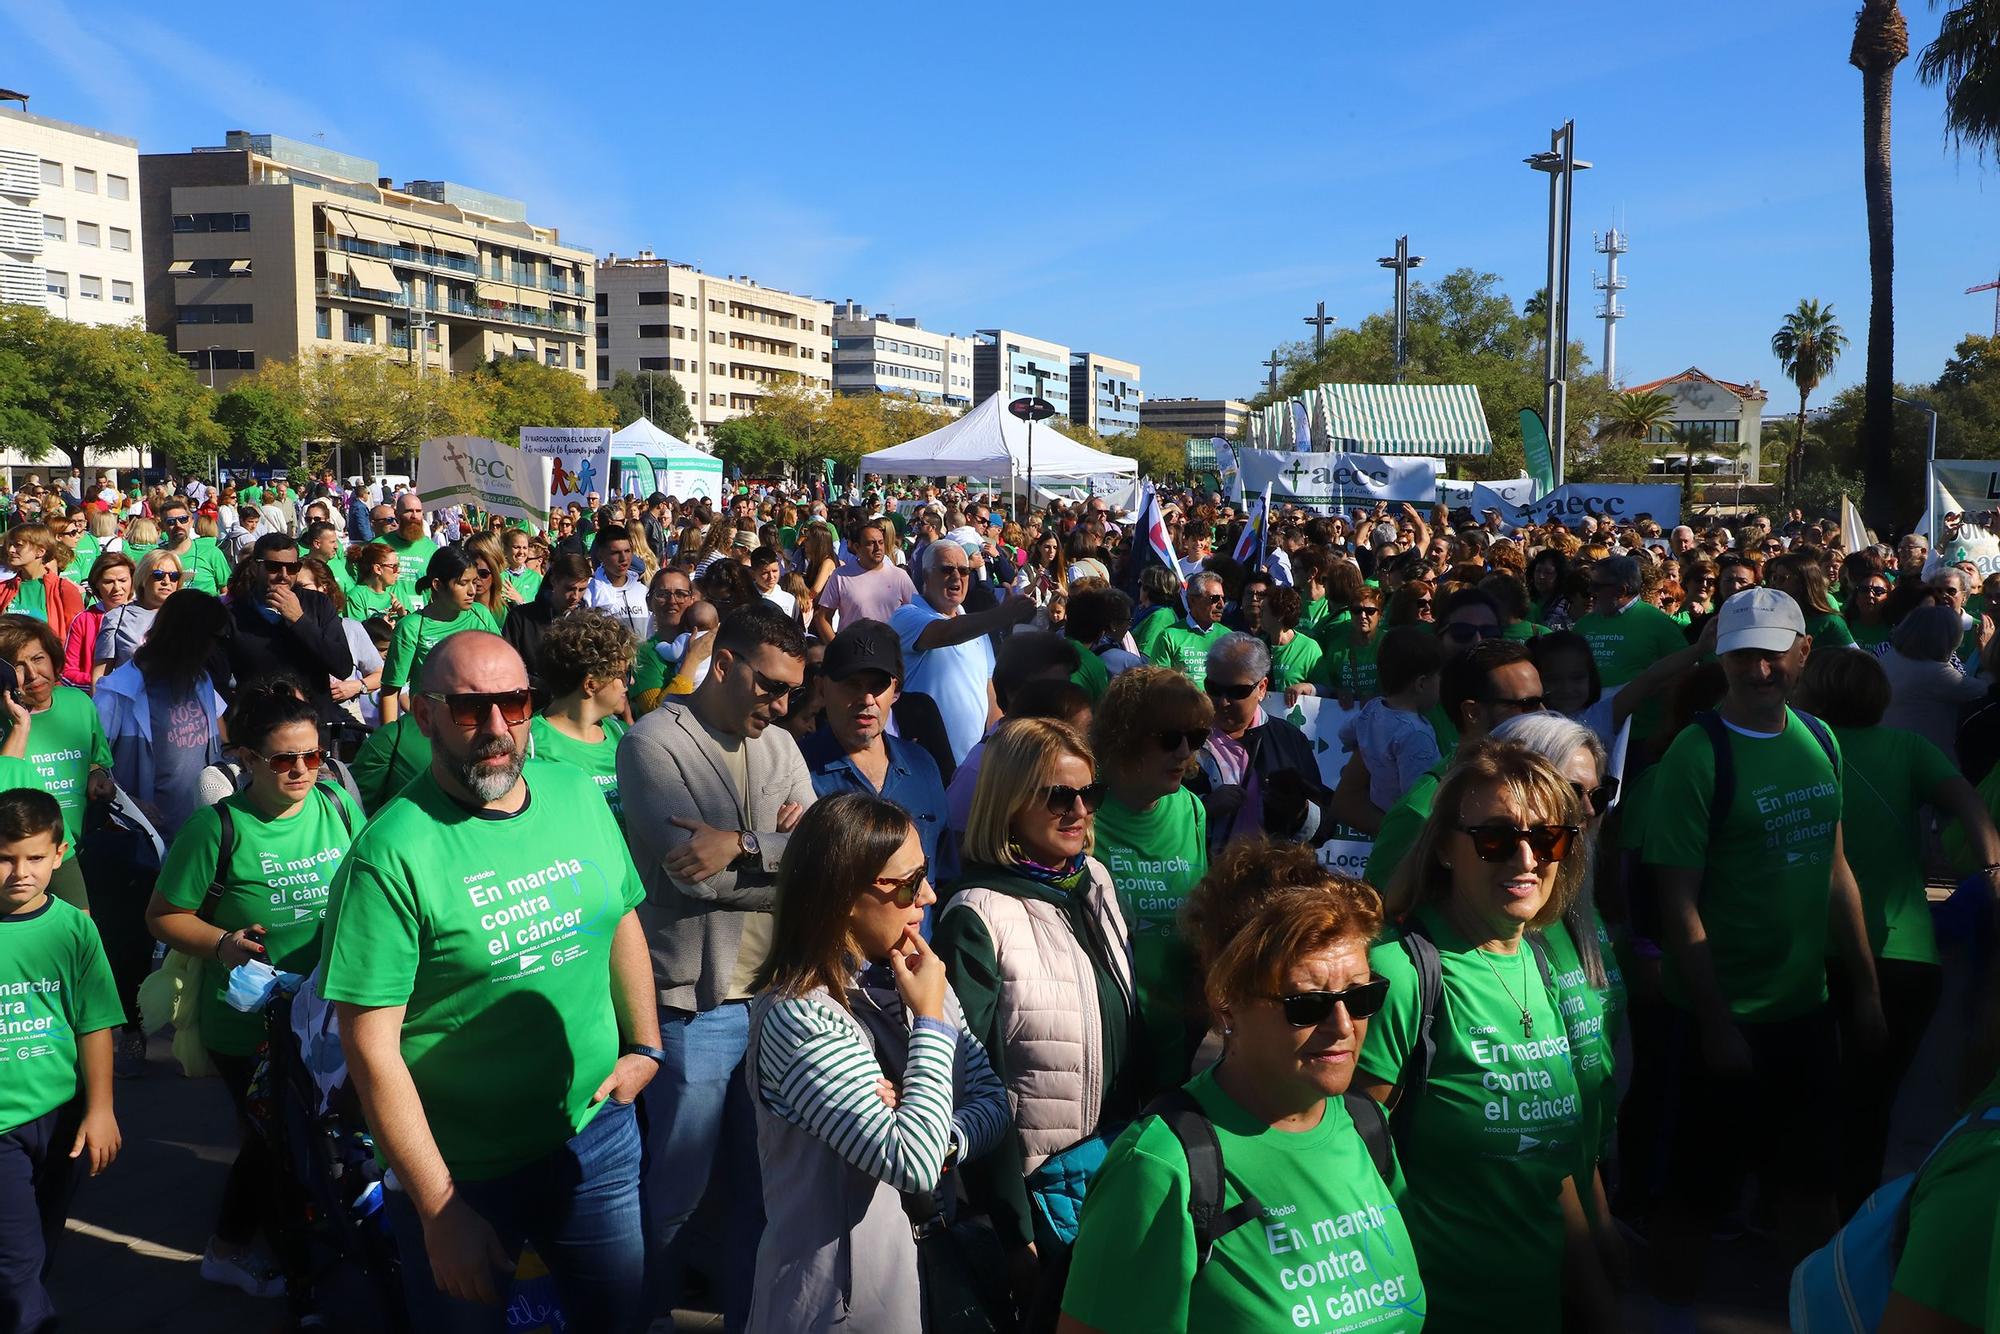 La Asociación Española contra el Cáncer convierte el Vial en una gran marea verde